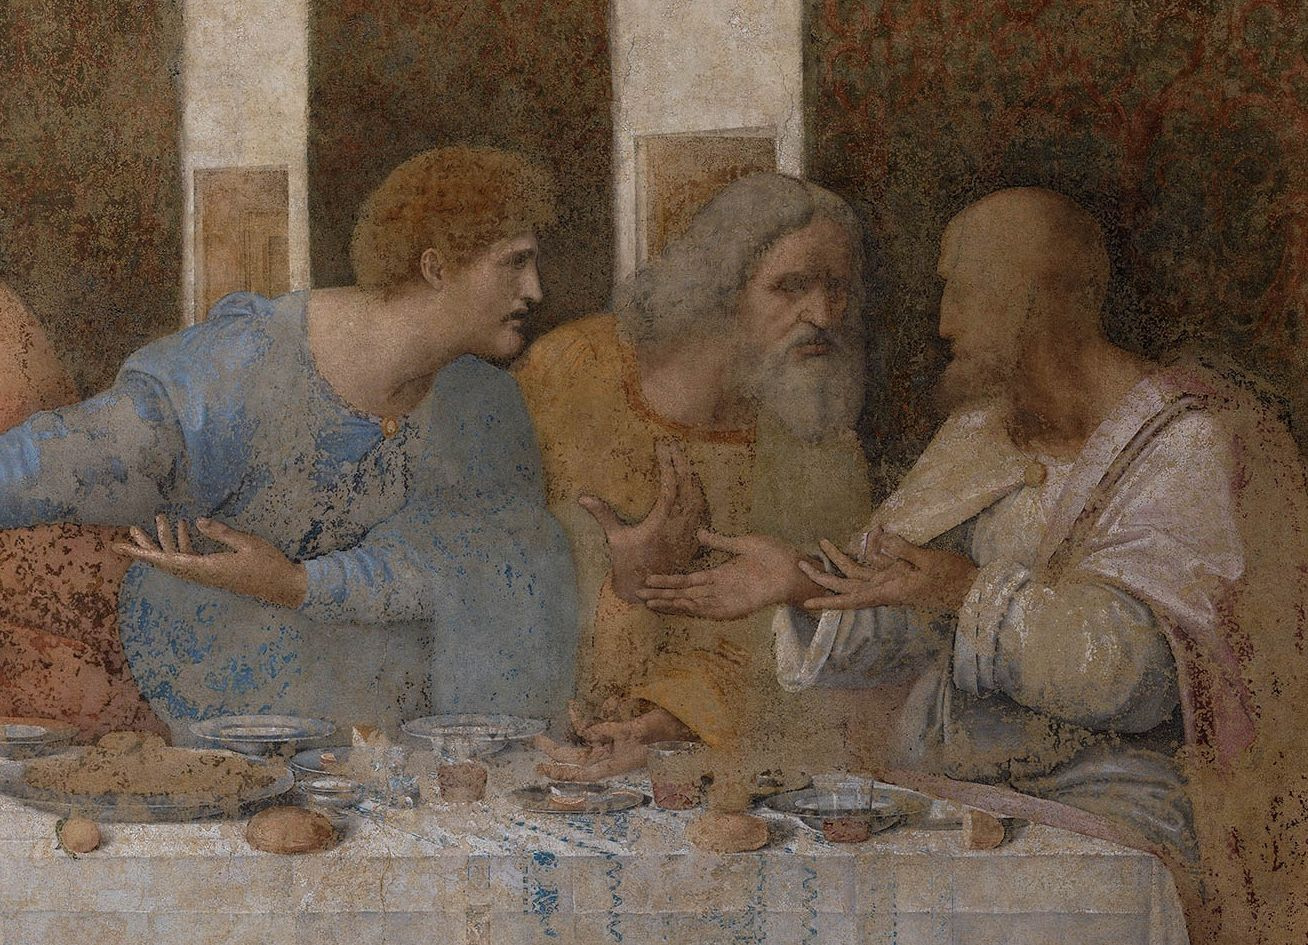 Сколько человек изображено на картине леонардо да винчи тайная вечеря